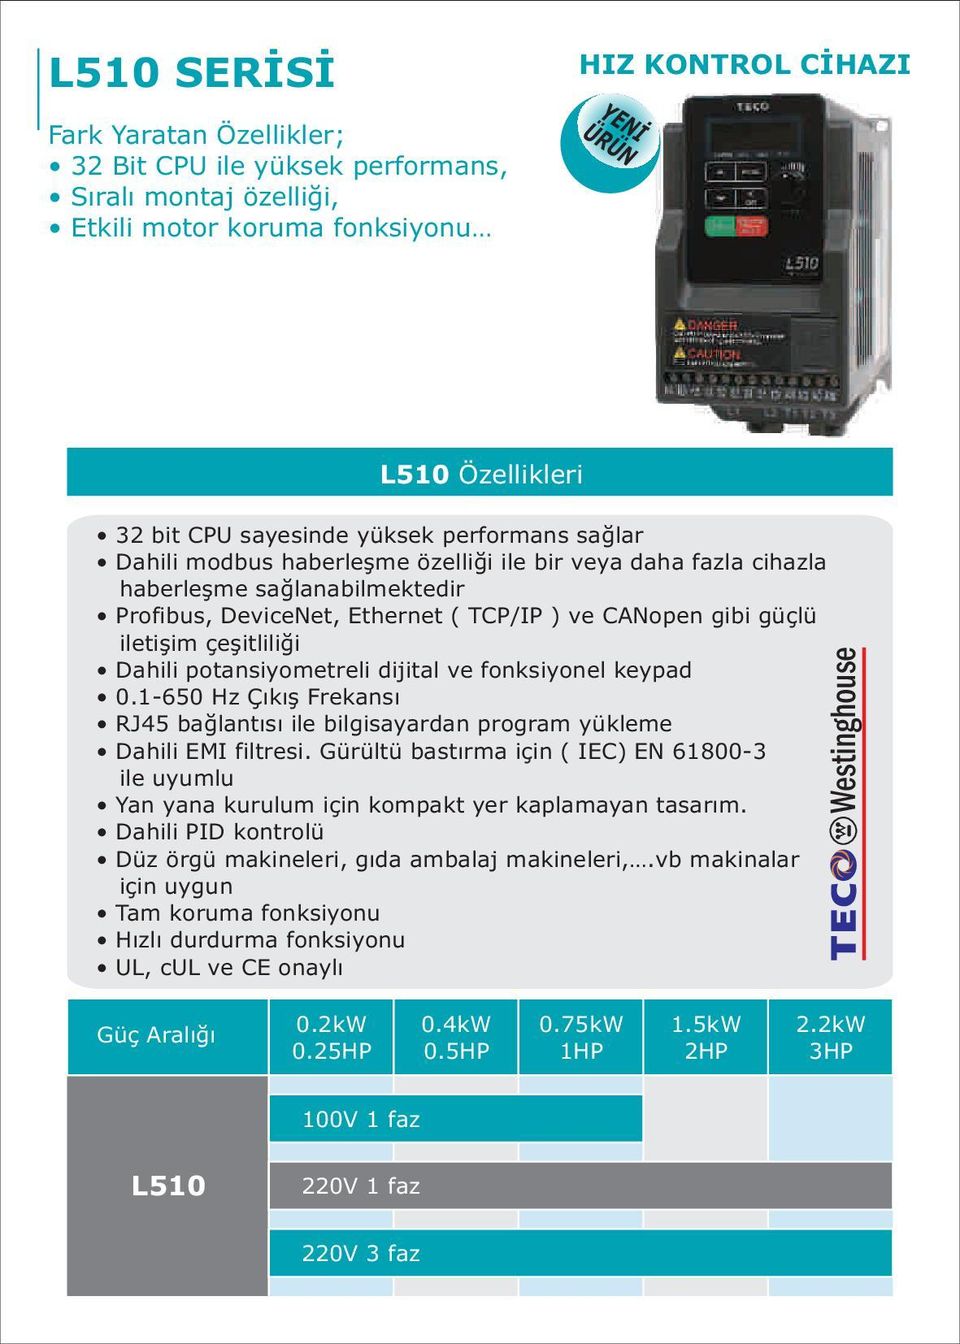 Dahili potansiyometreli dijital ve fonksiyonel keypad 0.1-650 Hz Çýkýþ Frekansý RJ5 baðlantýsý ile bilgisayardan program yükleme Dahili EMI filtresi.